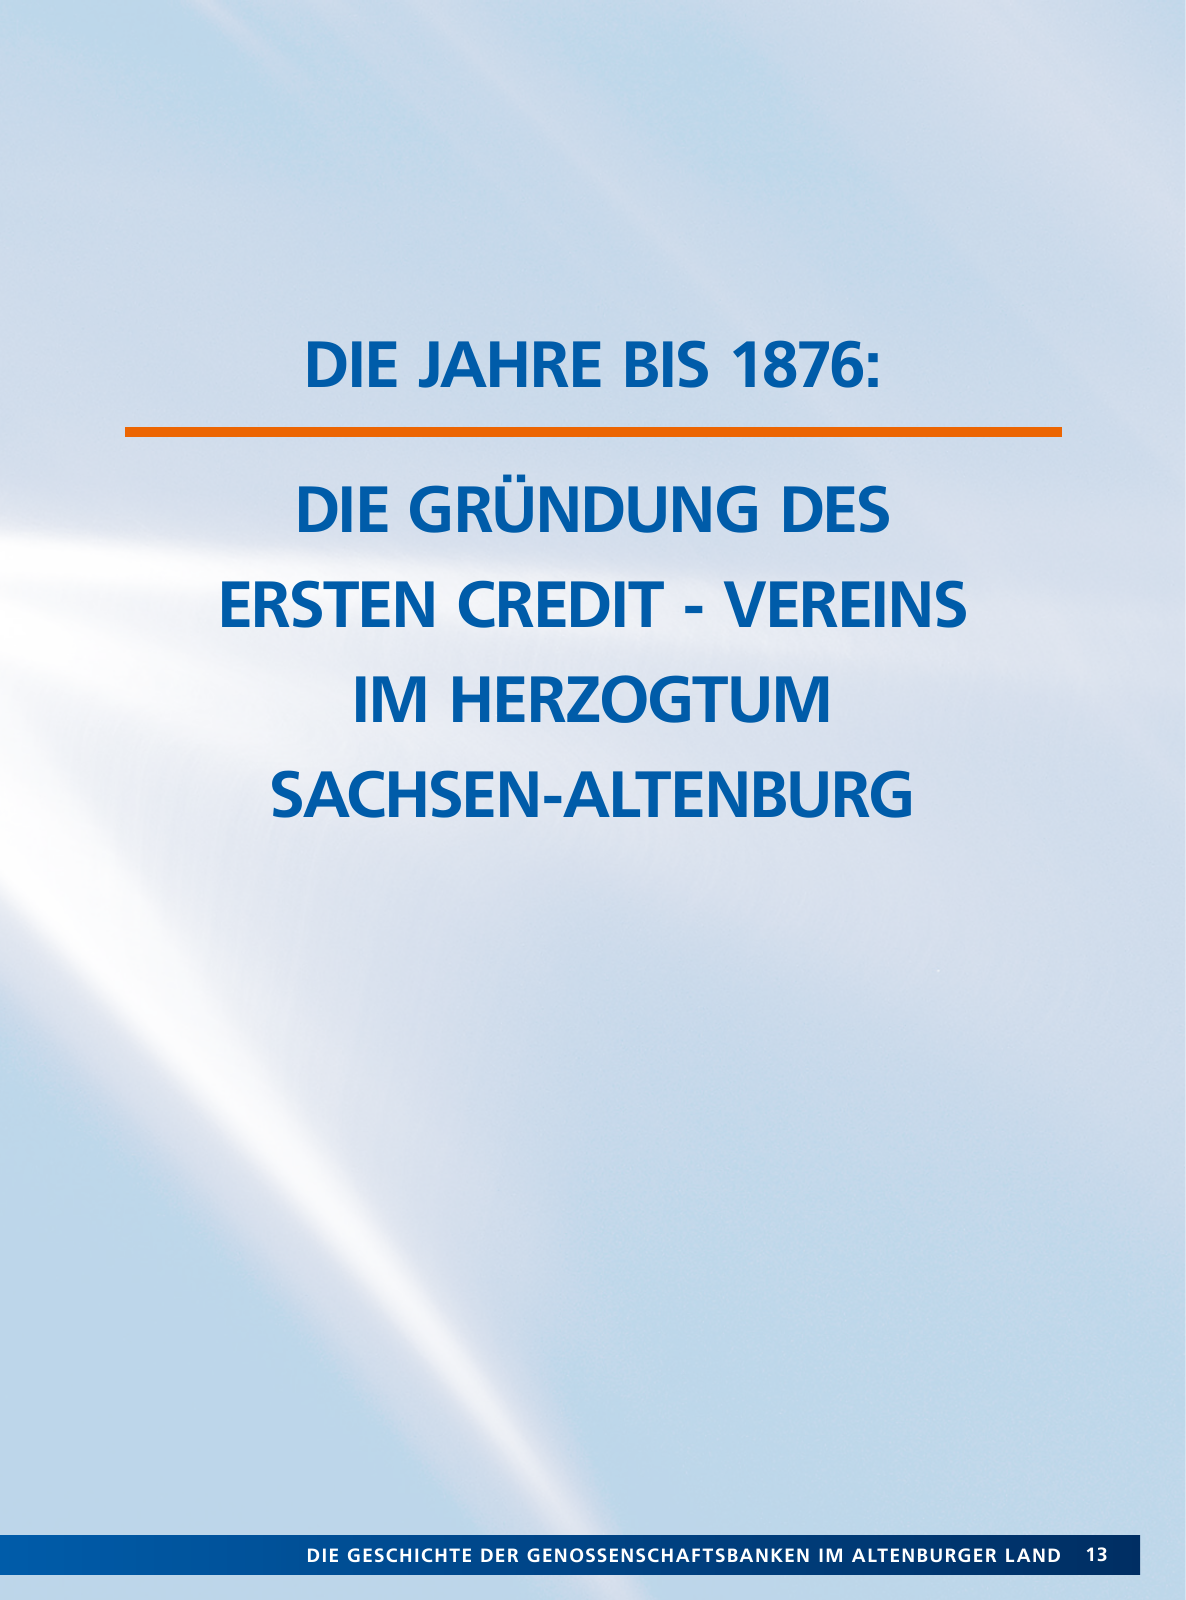 Vorschau Von der Idee, sich selbst zu helfen – 150 Jahre genossenschaftliches Bankwesen im Altenburger Land Seite 13